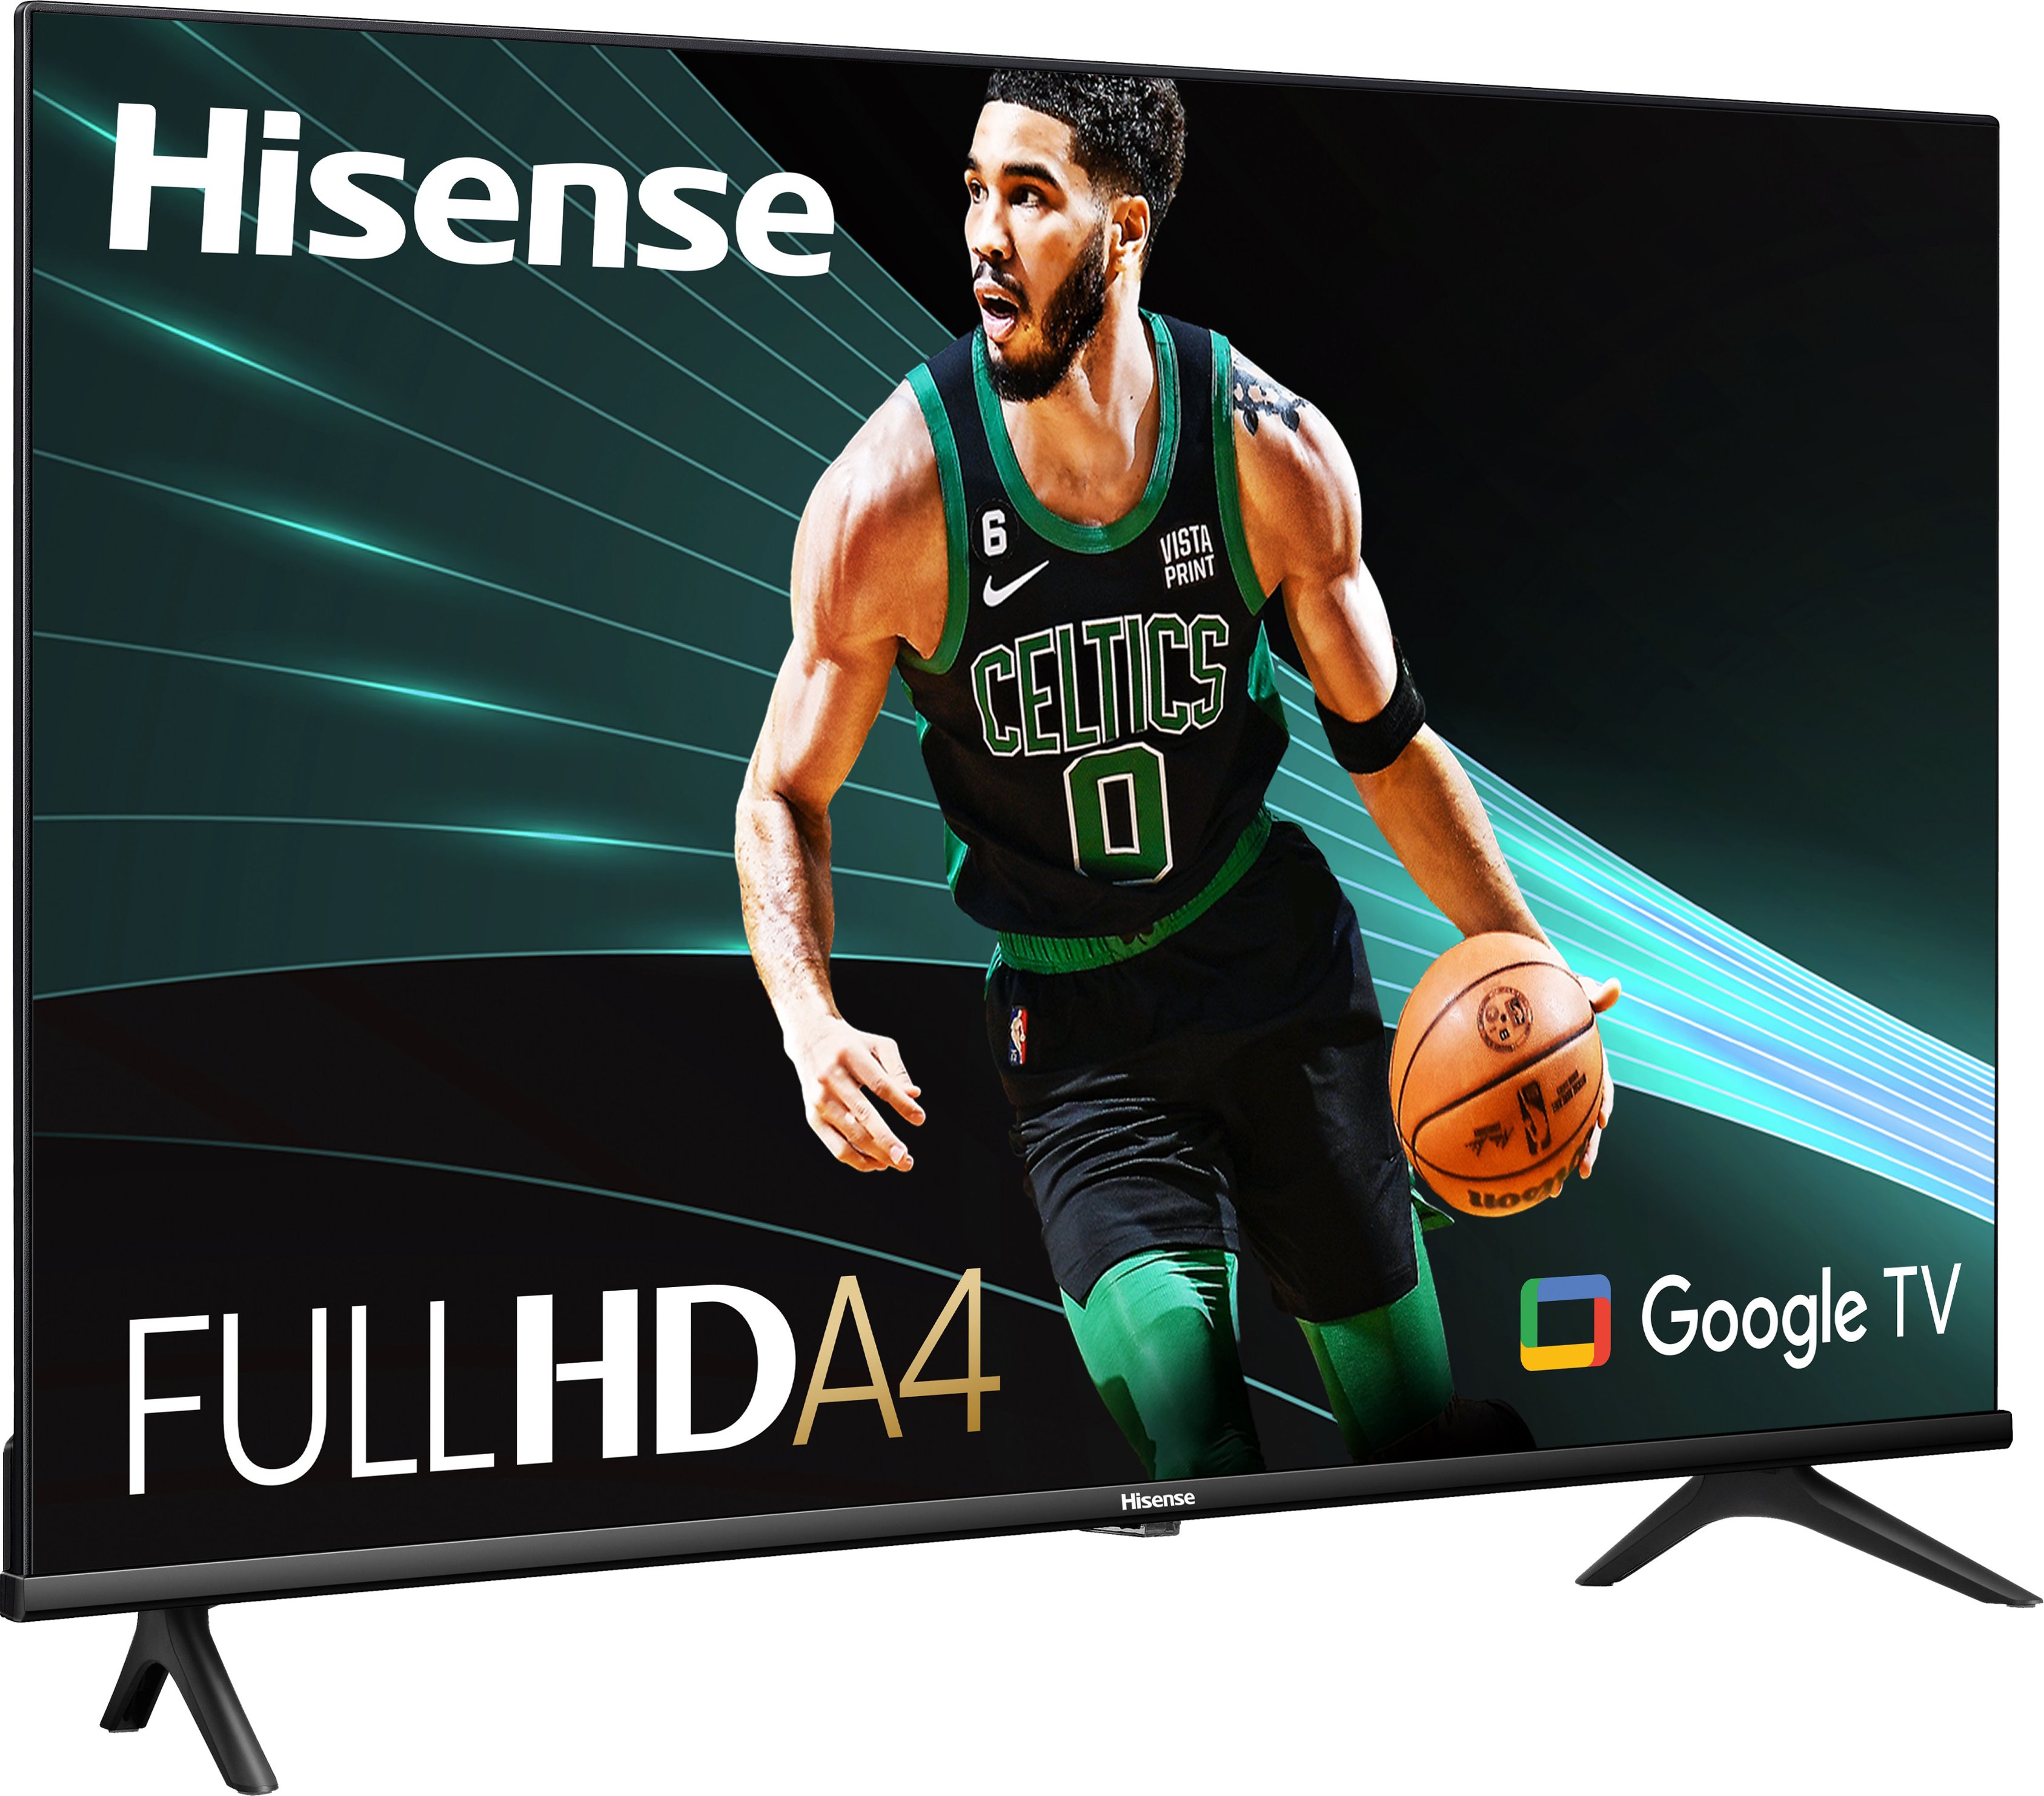 Hisense Televisor inteligente Android de 32 pulgadas FHD 1080p de la serie  A4 con DTS Virtual X, modos de juego y deportes, Chromecast integrado